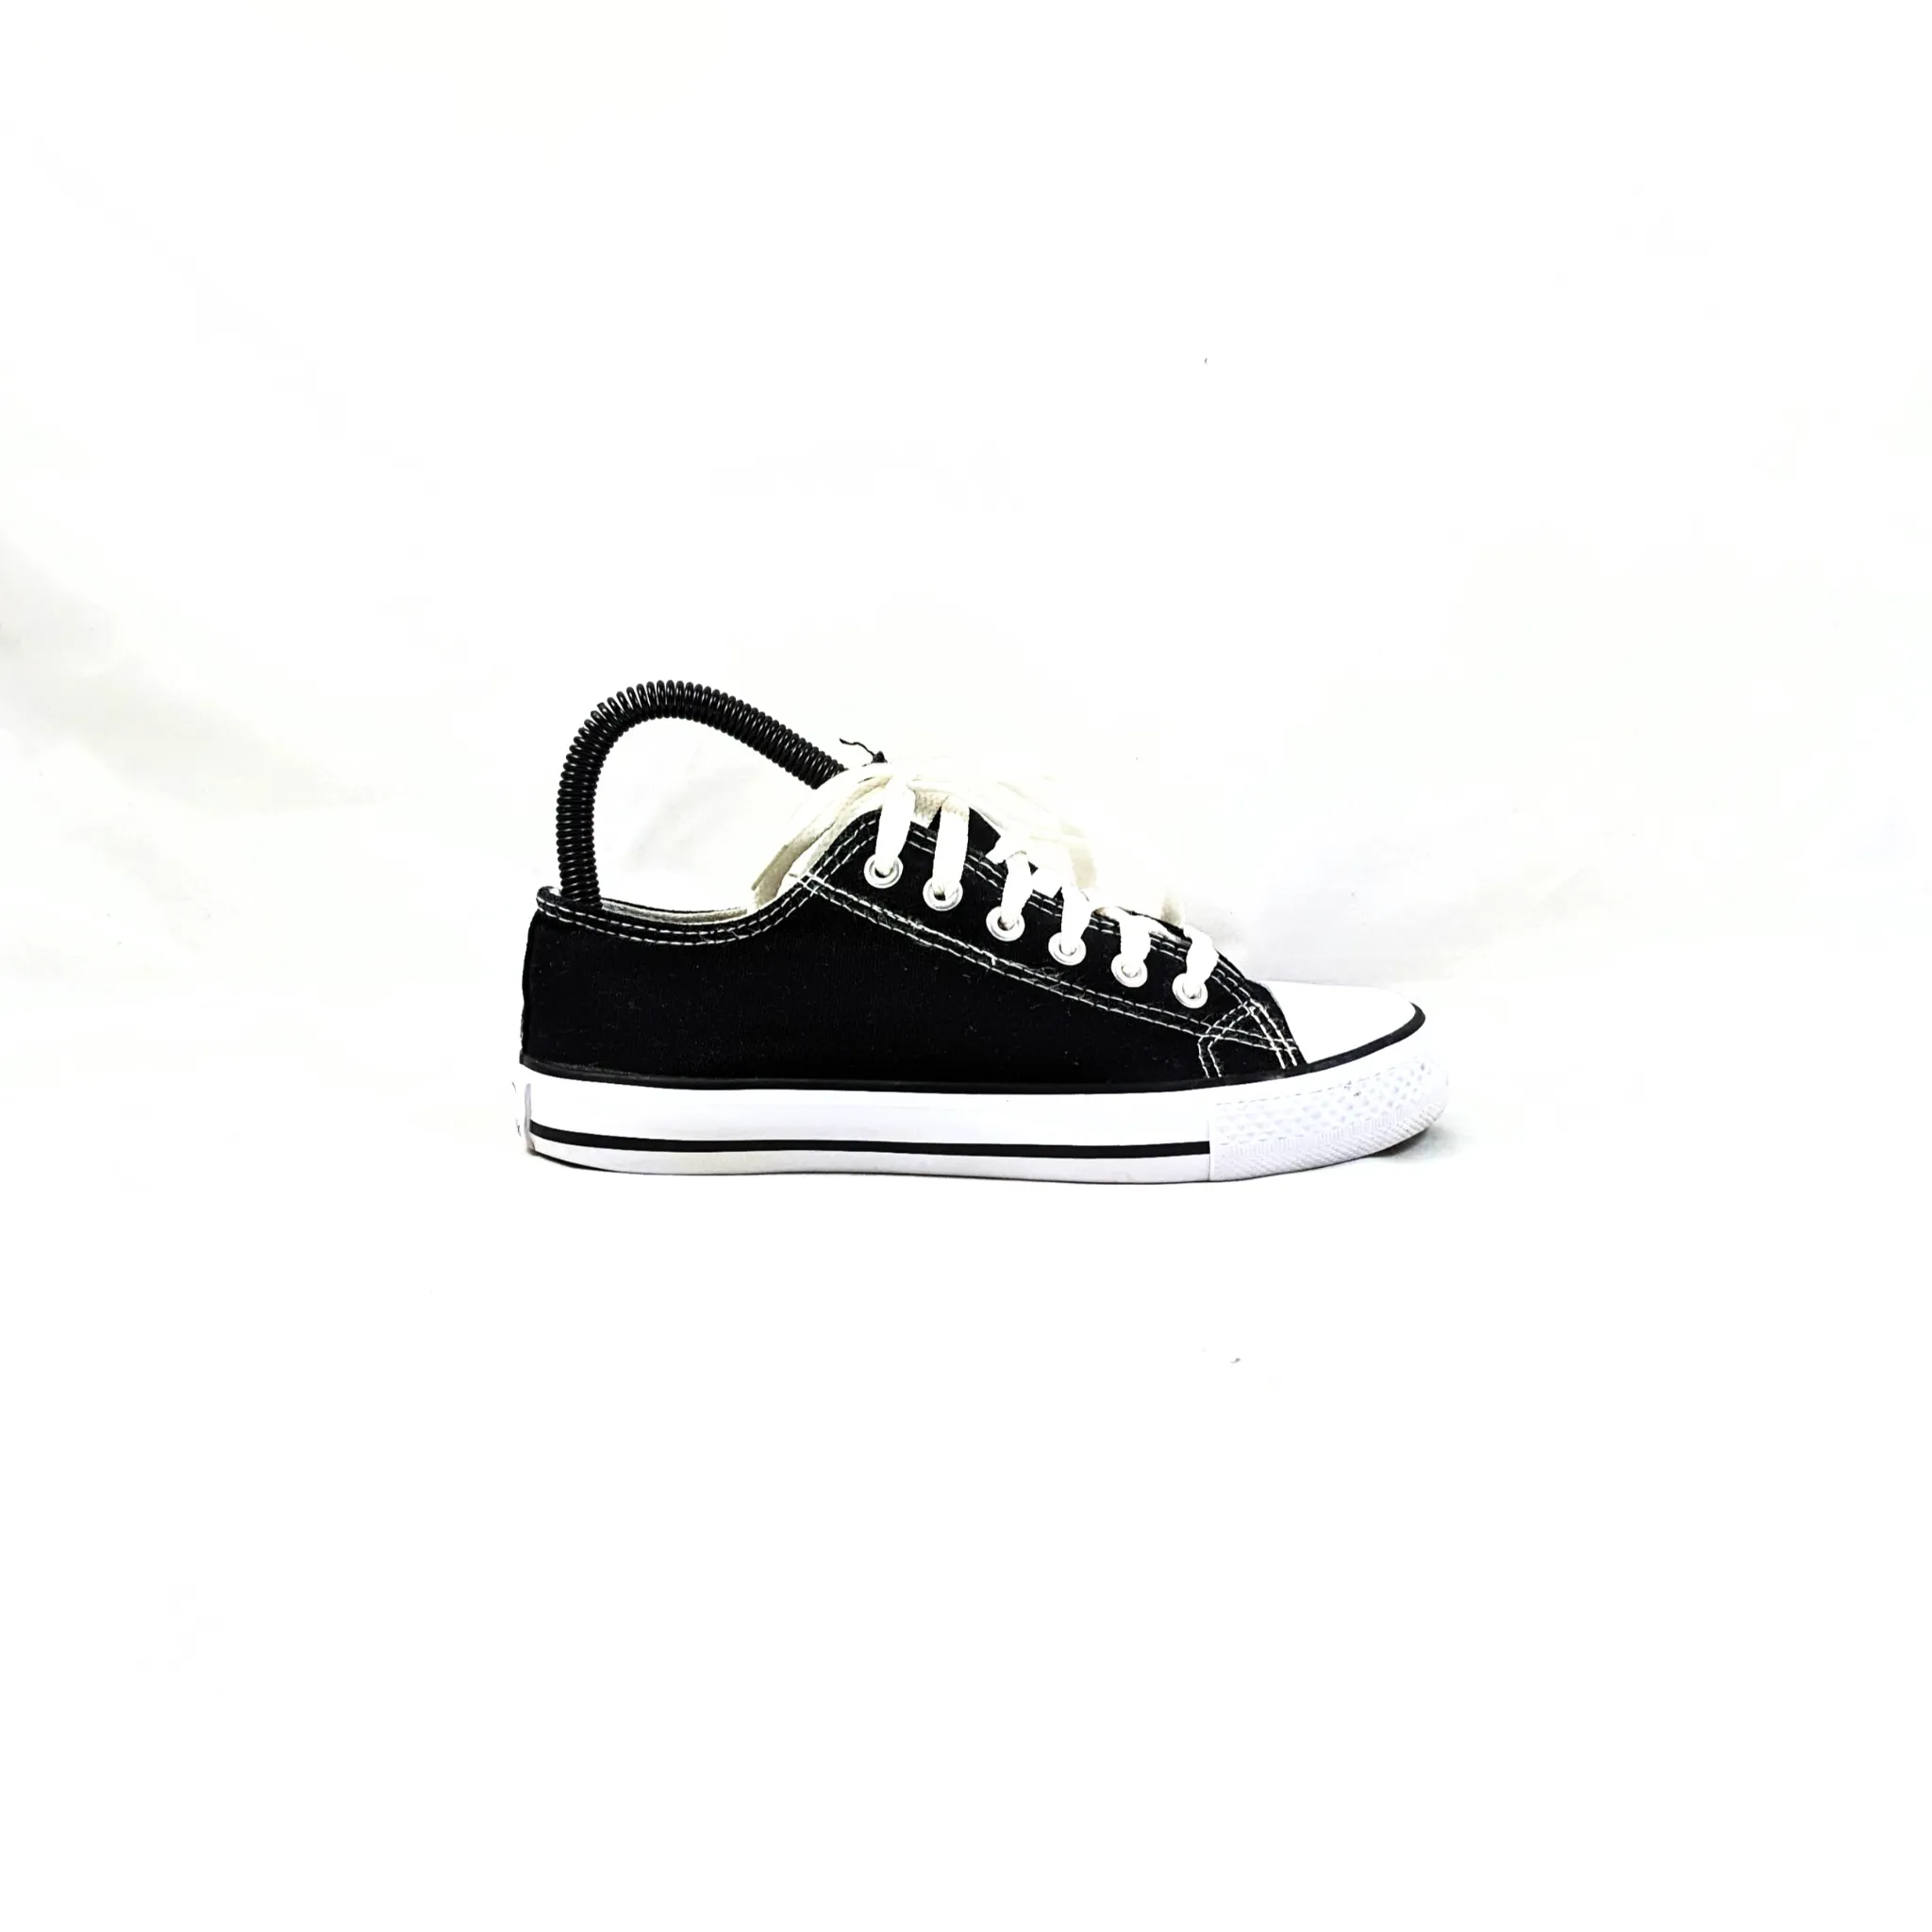 Davidnik Black Sneakers Premium C